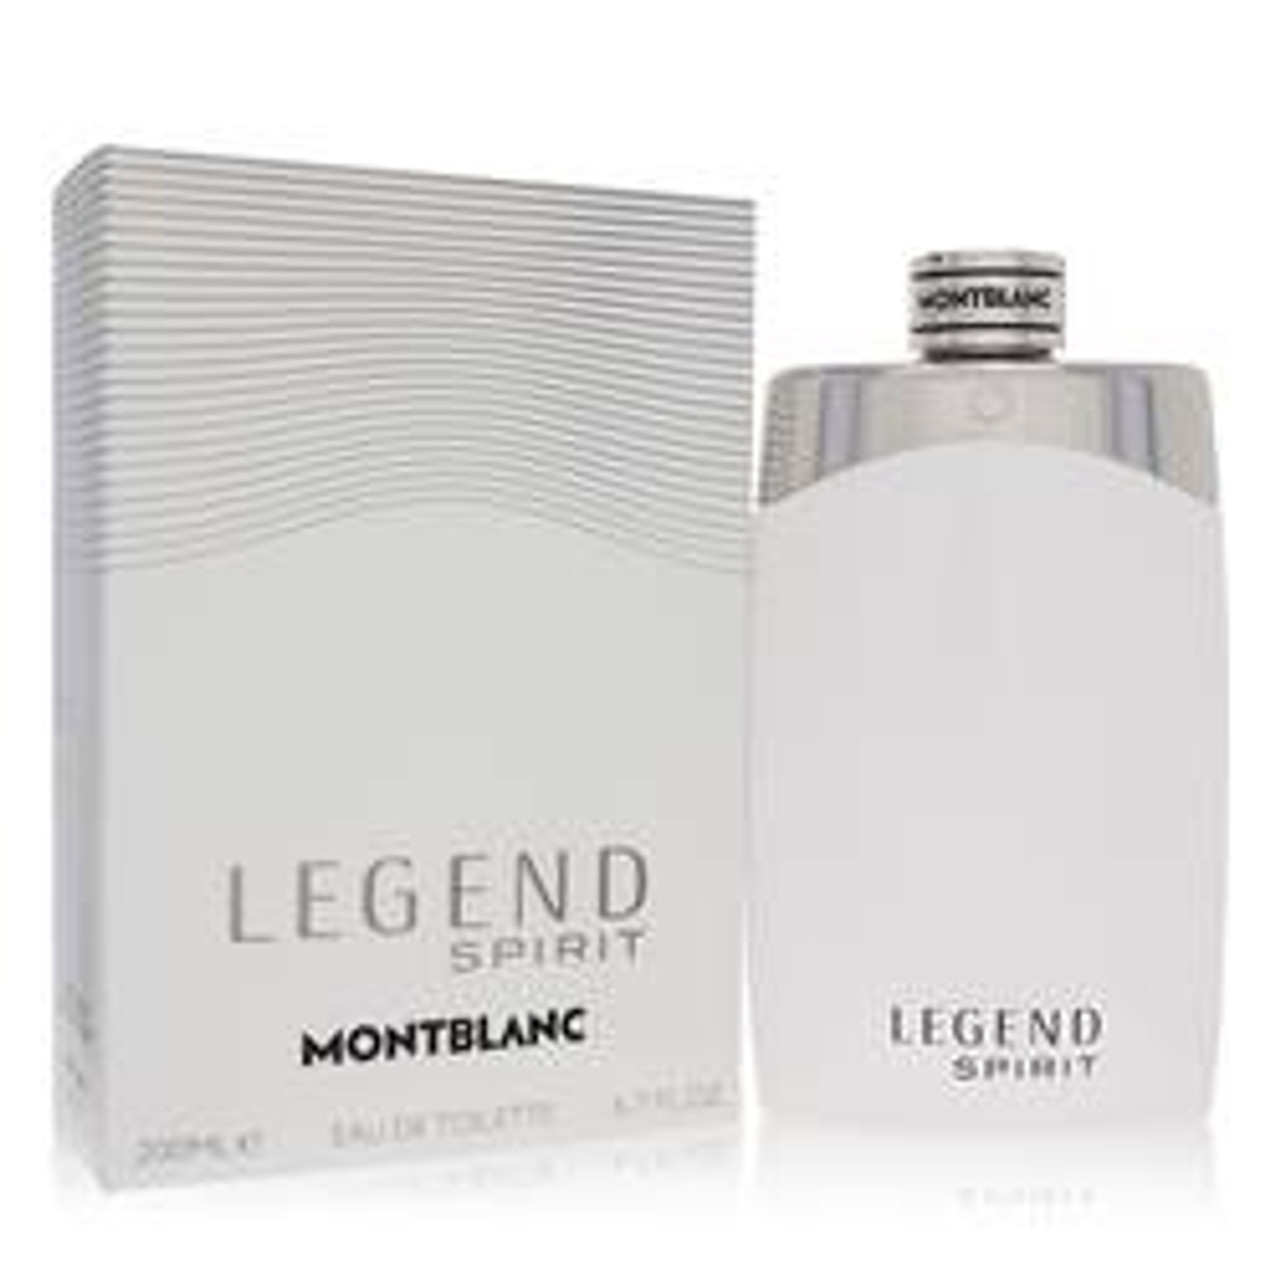 Montblanc Legend Spirit Cologne By Mont Blanc Eau De Toilette Spray 6.7 oz for Men - *Pre-Order